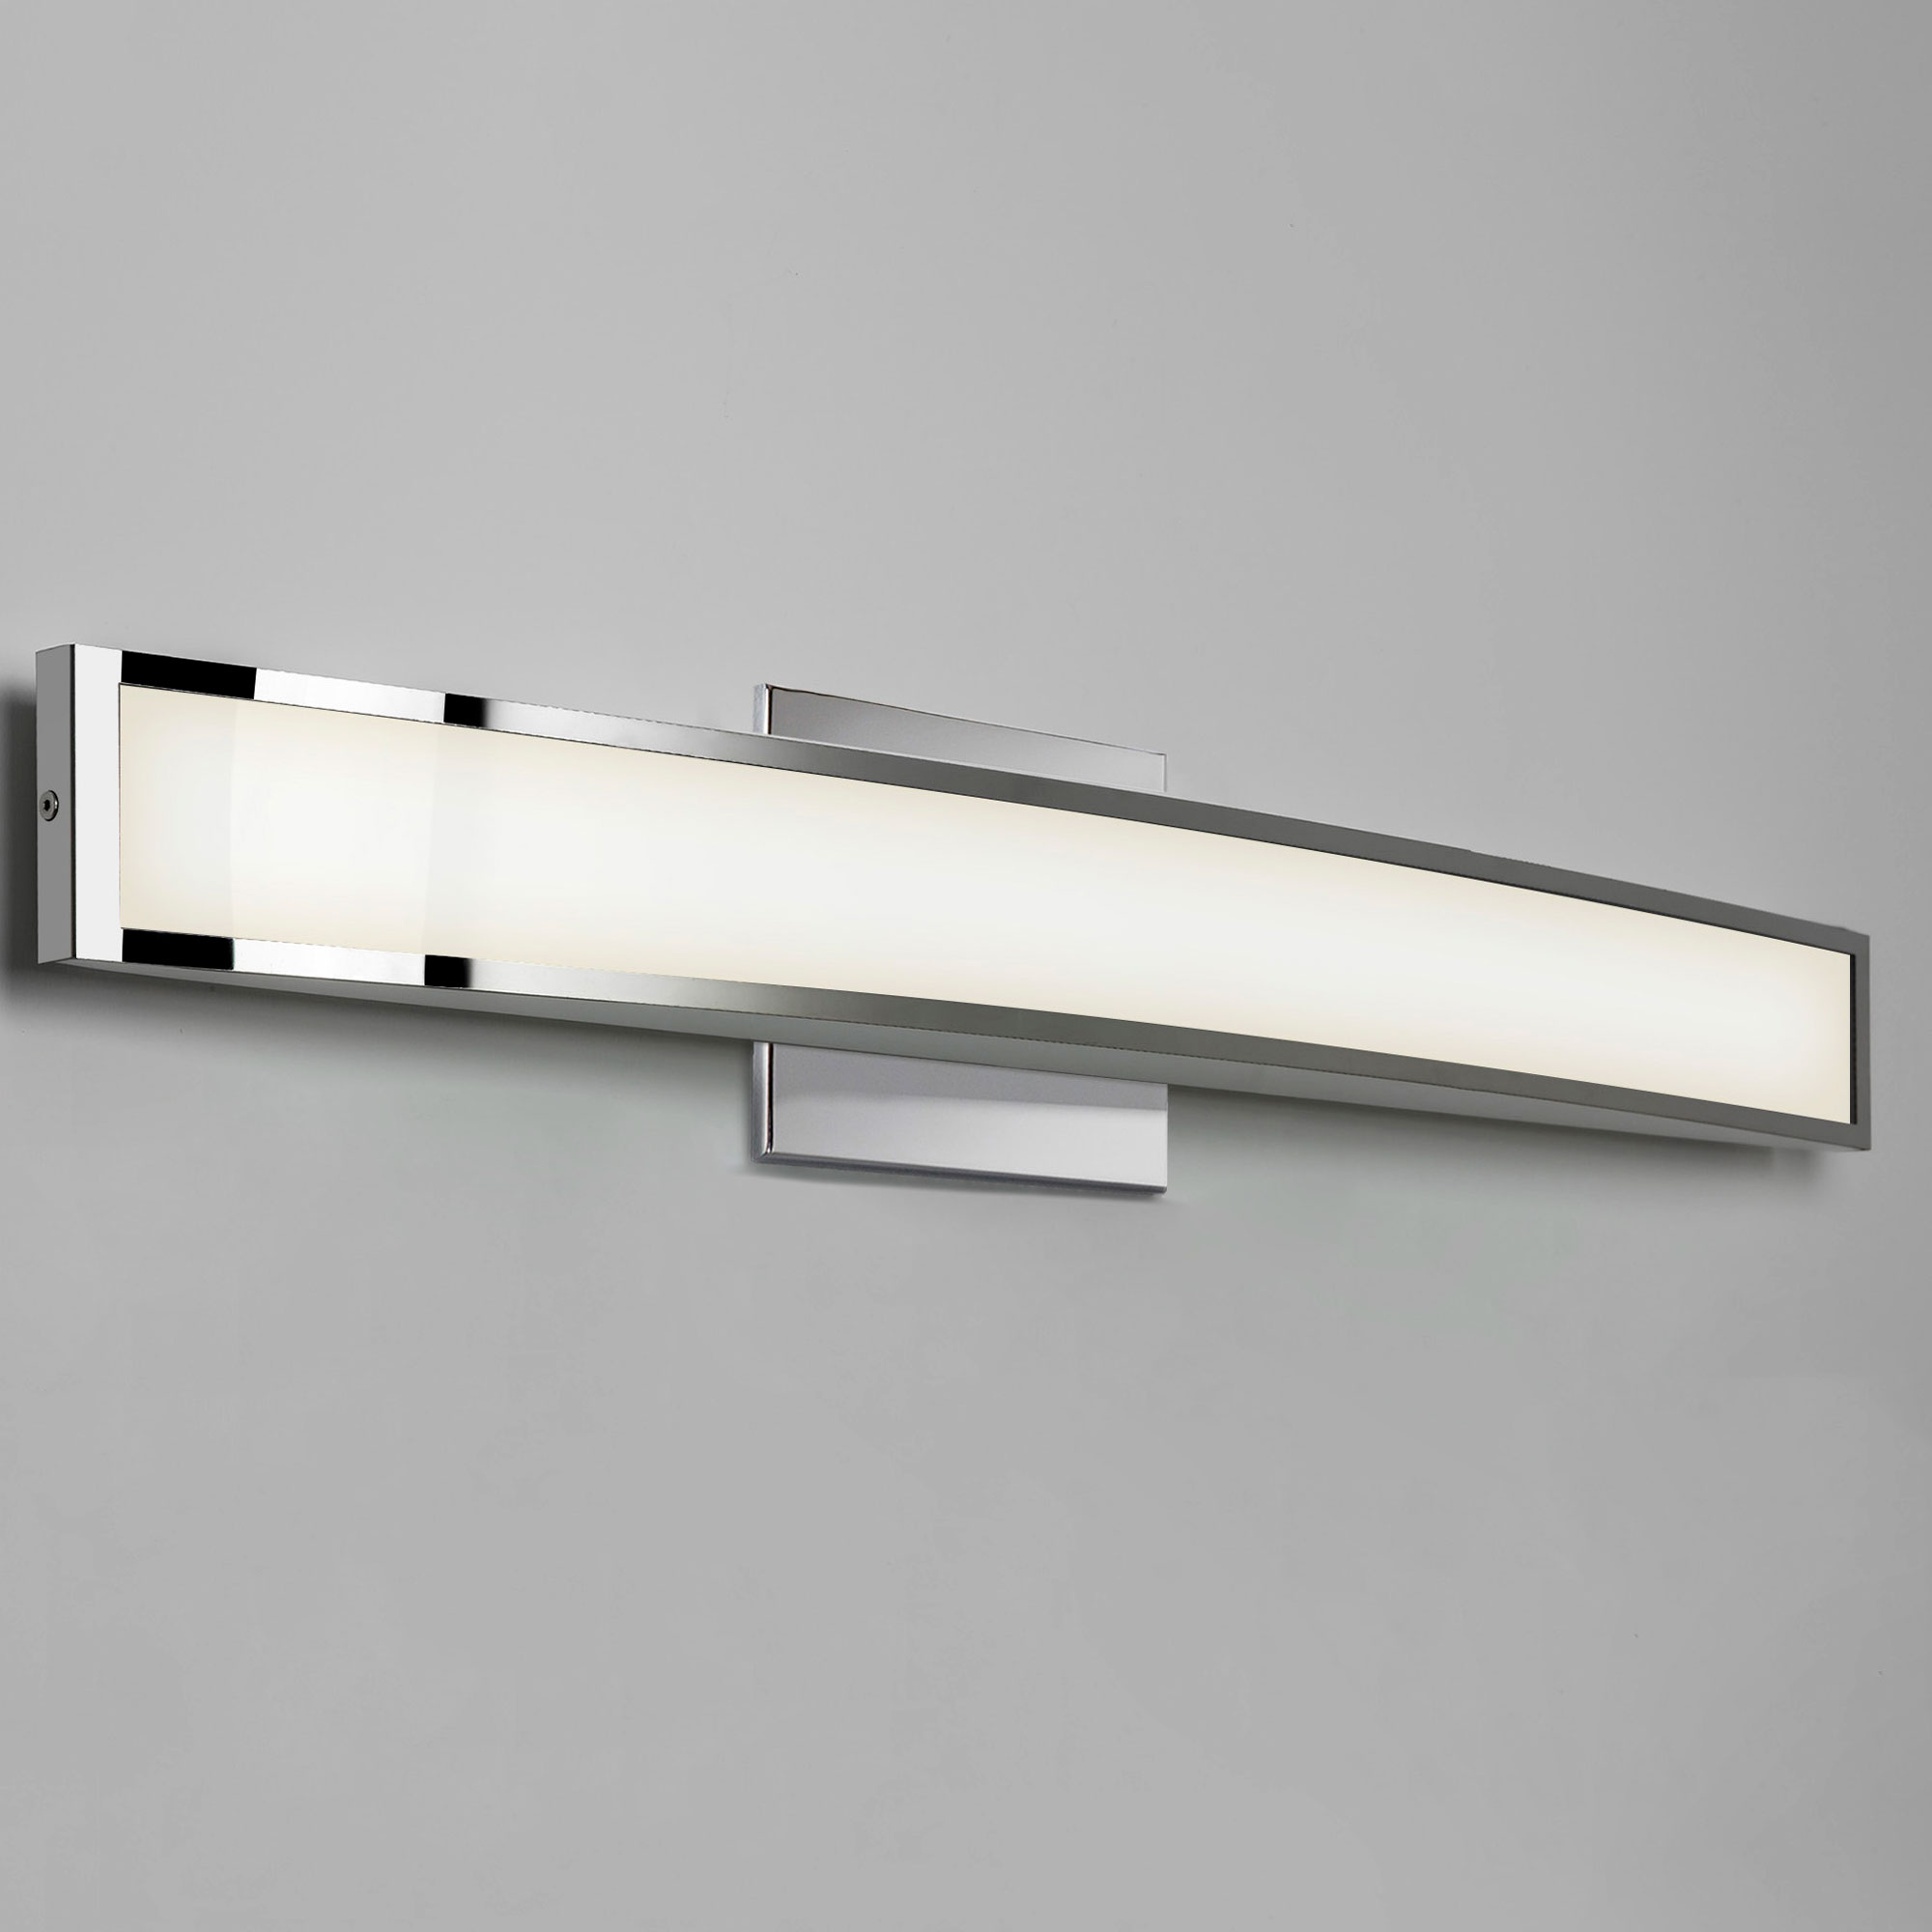 Astro Lighting Bathroom Mirror, Lamps Plus Bathroom Vanity Light Fixtures